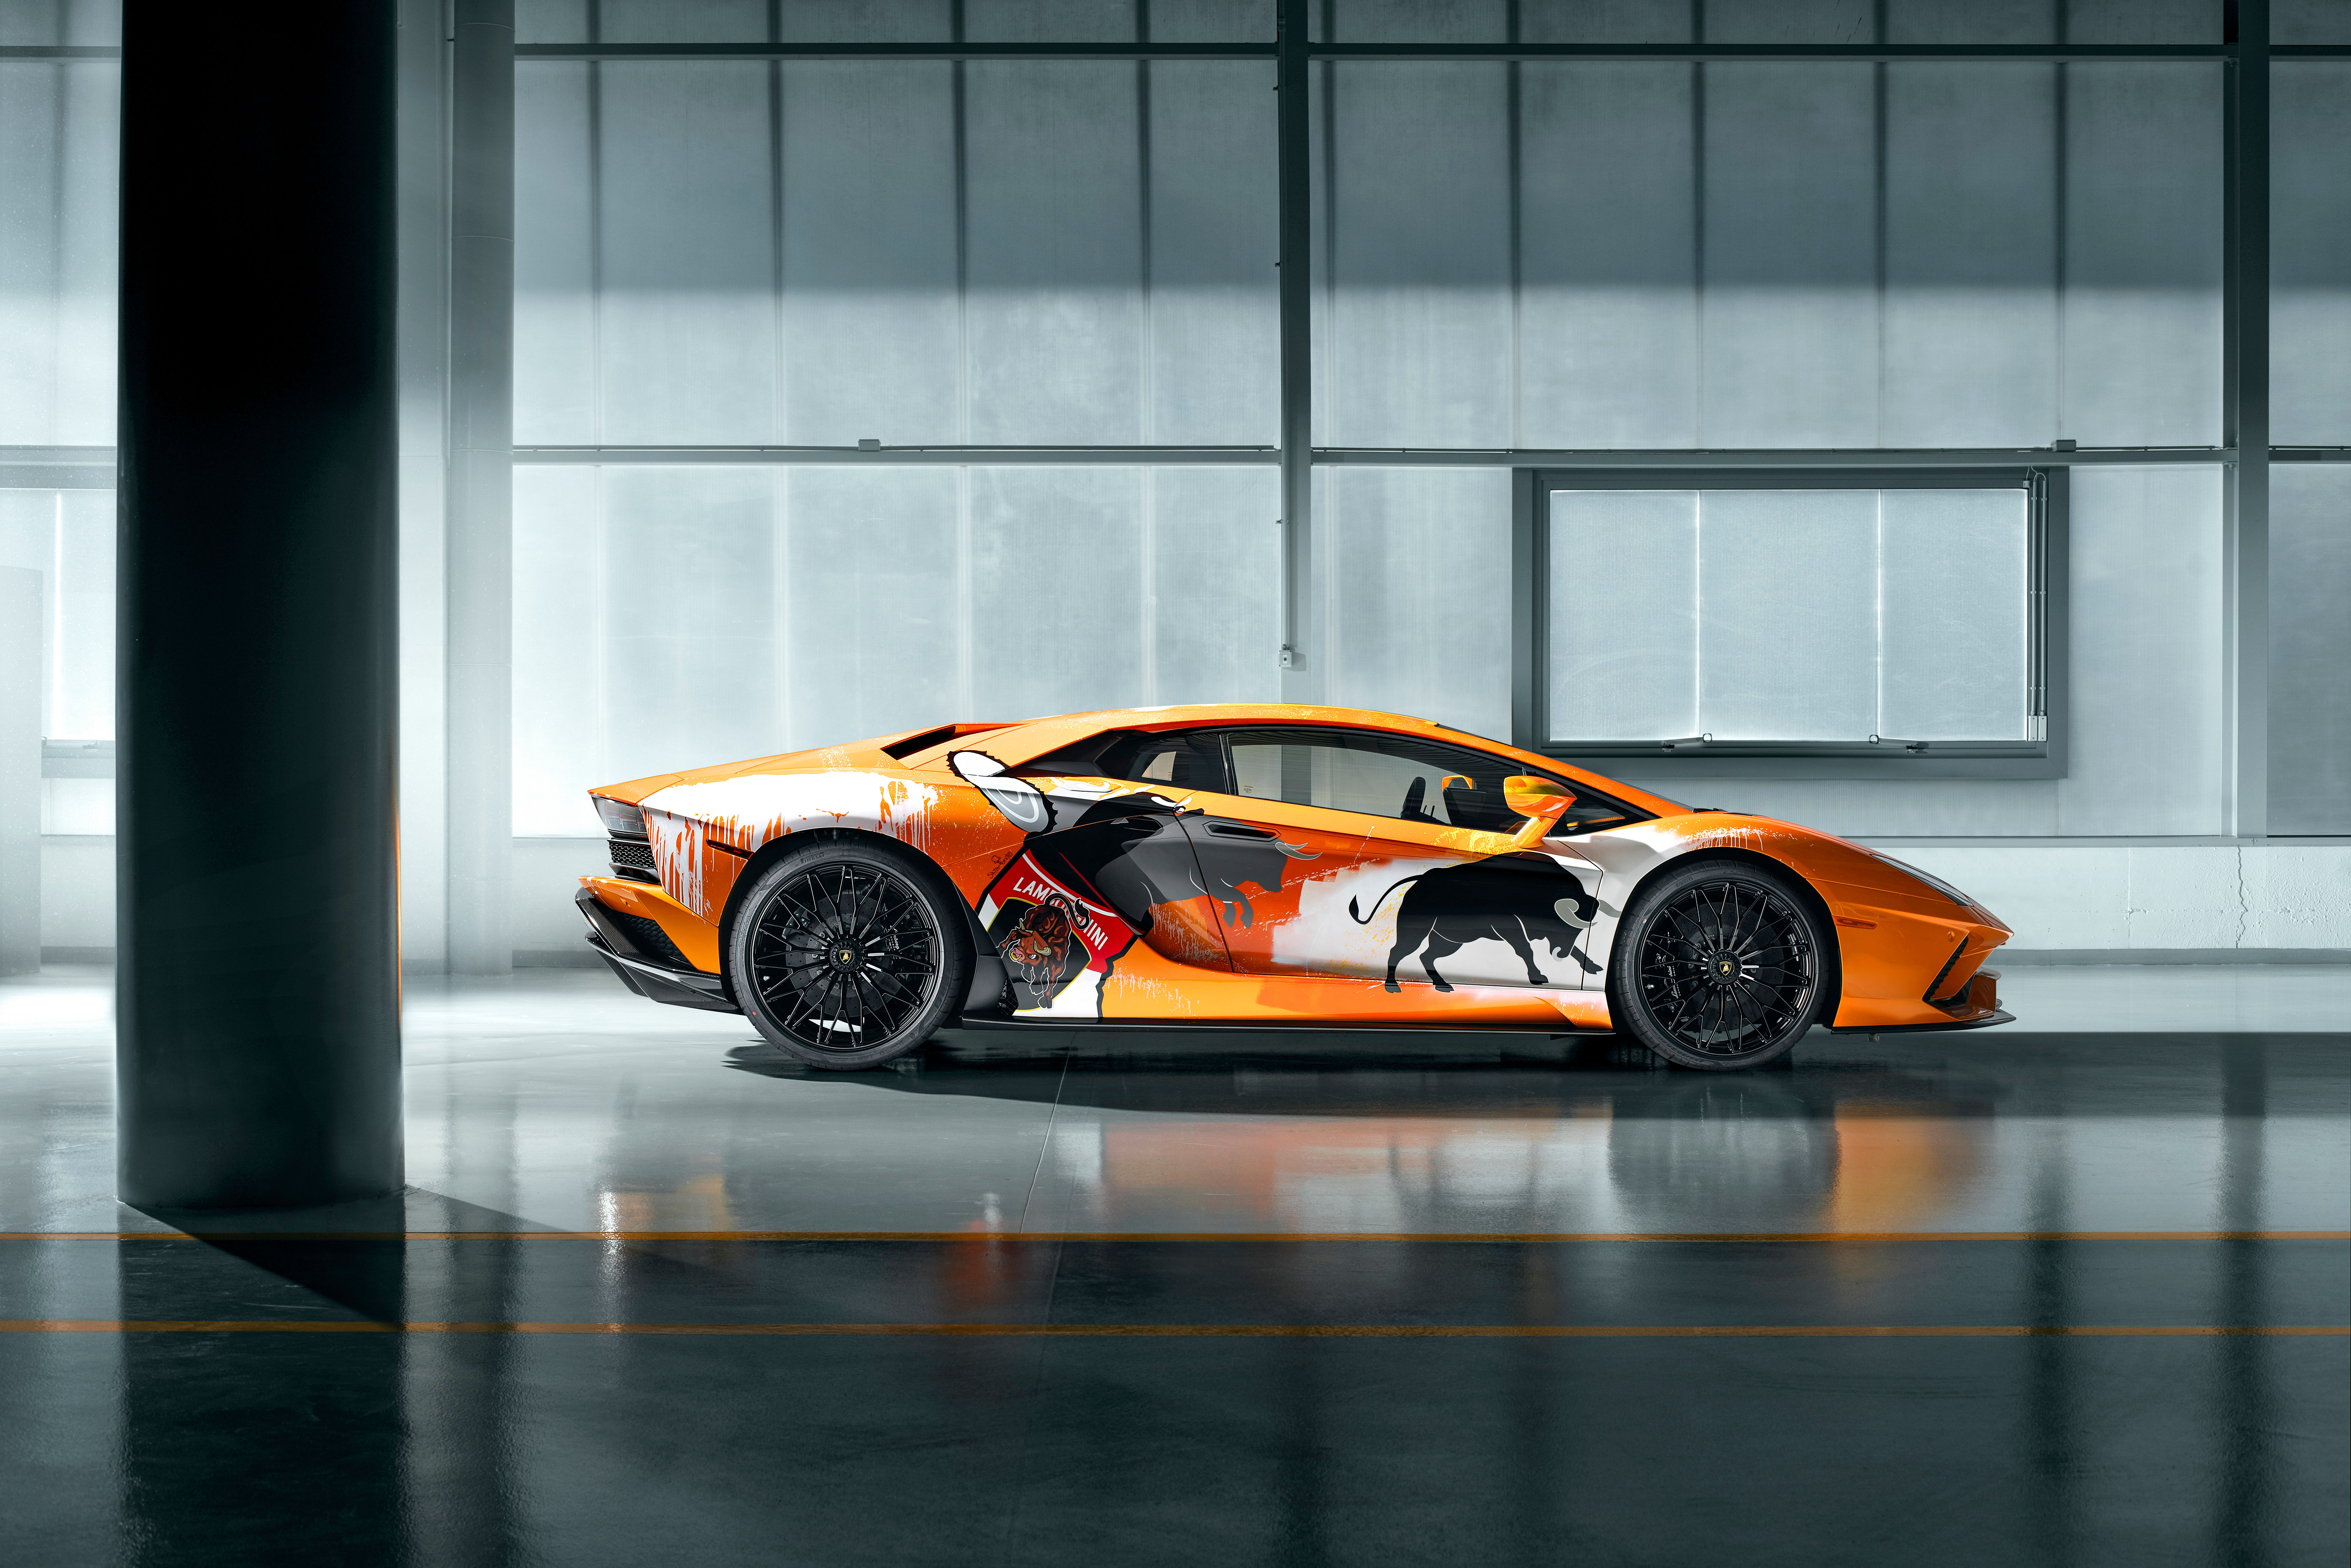 Với bức vẽ chi tiết về một chiếc Lamborghini đẳng cấp, bạn sẽ được trải nghiệm sự tuyệt vời của thế giới xa xỉ và sang trọng này. Từ những chi tiết nhỏ nhất đến kiểu dáng ngoạn mục, bạn sẽ được khám phá tất cả trong những giây phút thư giãn. Hãy cùng chiêm ngưỡng và tận hưởng!